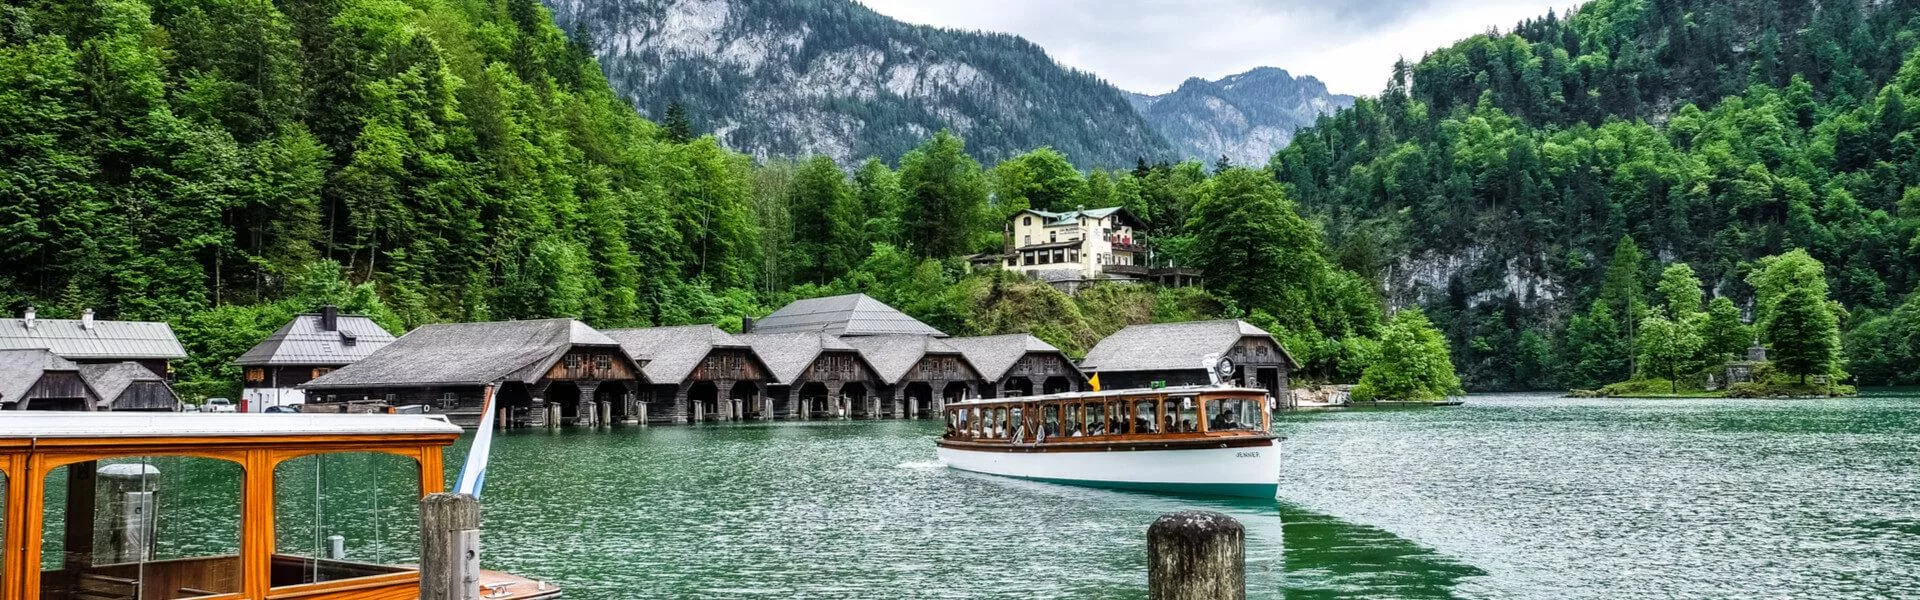 Campings in Berchtesgaden zoeken